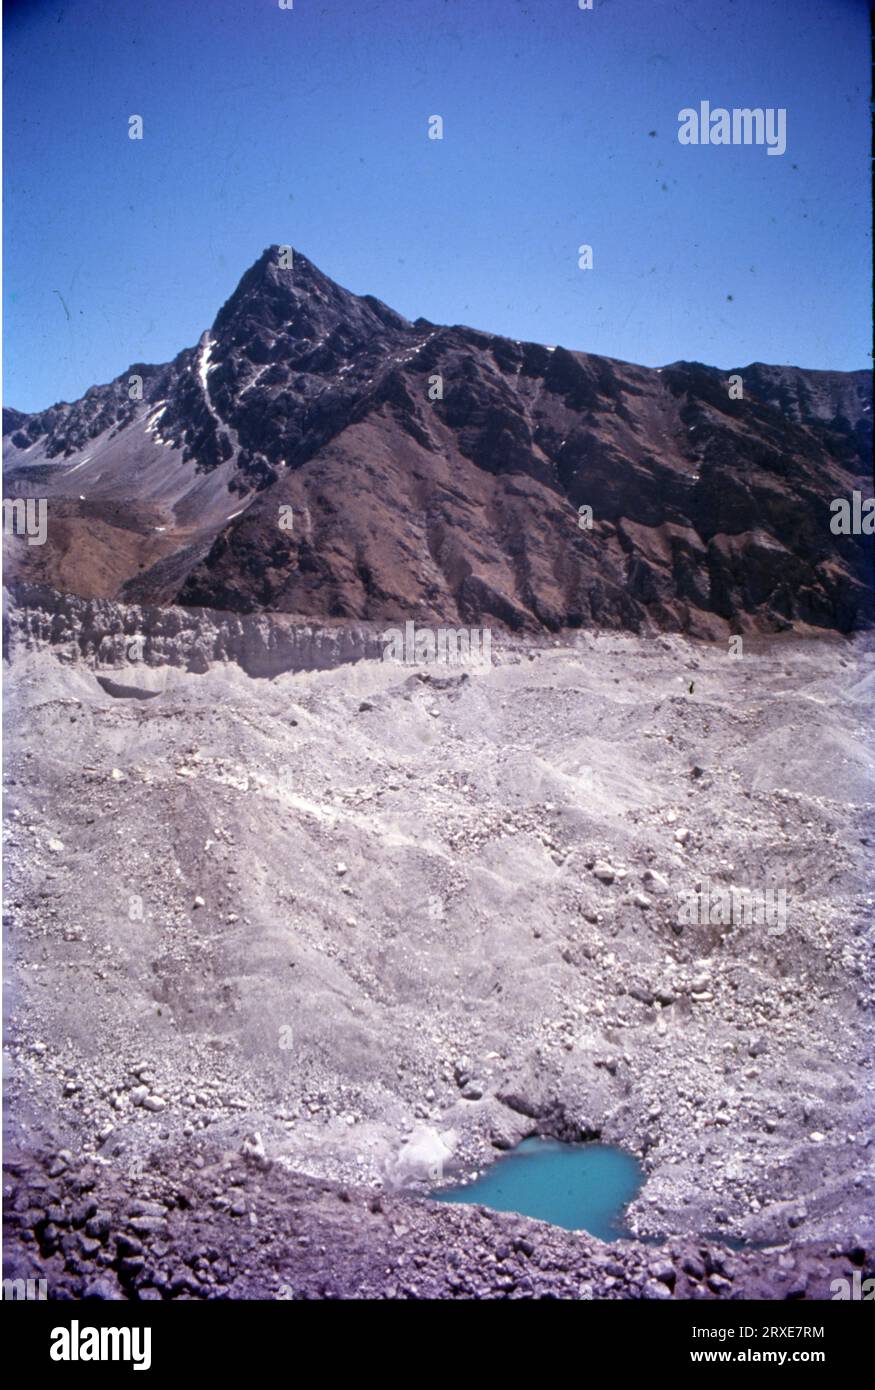 Der Cho Oyu ist mit 8.188 Metern (26.864 ft) der sethöchste Berg der Welt. Cho Oyu bedeutet auf Tibetisch „Türkische Göttin“. Der Berg ist der westlichste Hauptgipfel des Khumbu-Unterabschnitts des Mahalangur-Himalaya 20 km westlich des Mount Everest. Der Berg steht an der Grenze zwischen China und Nepal zur Provinz Nr.1. Stockfoto